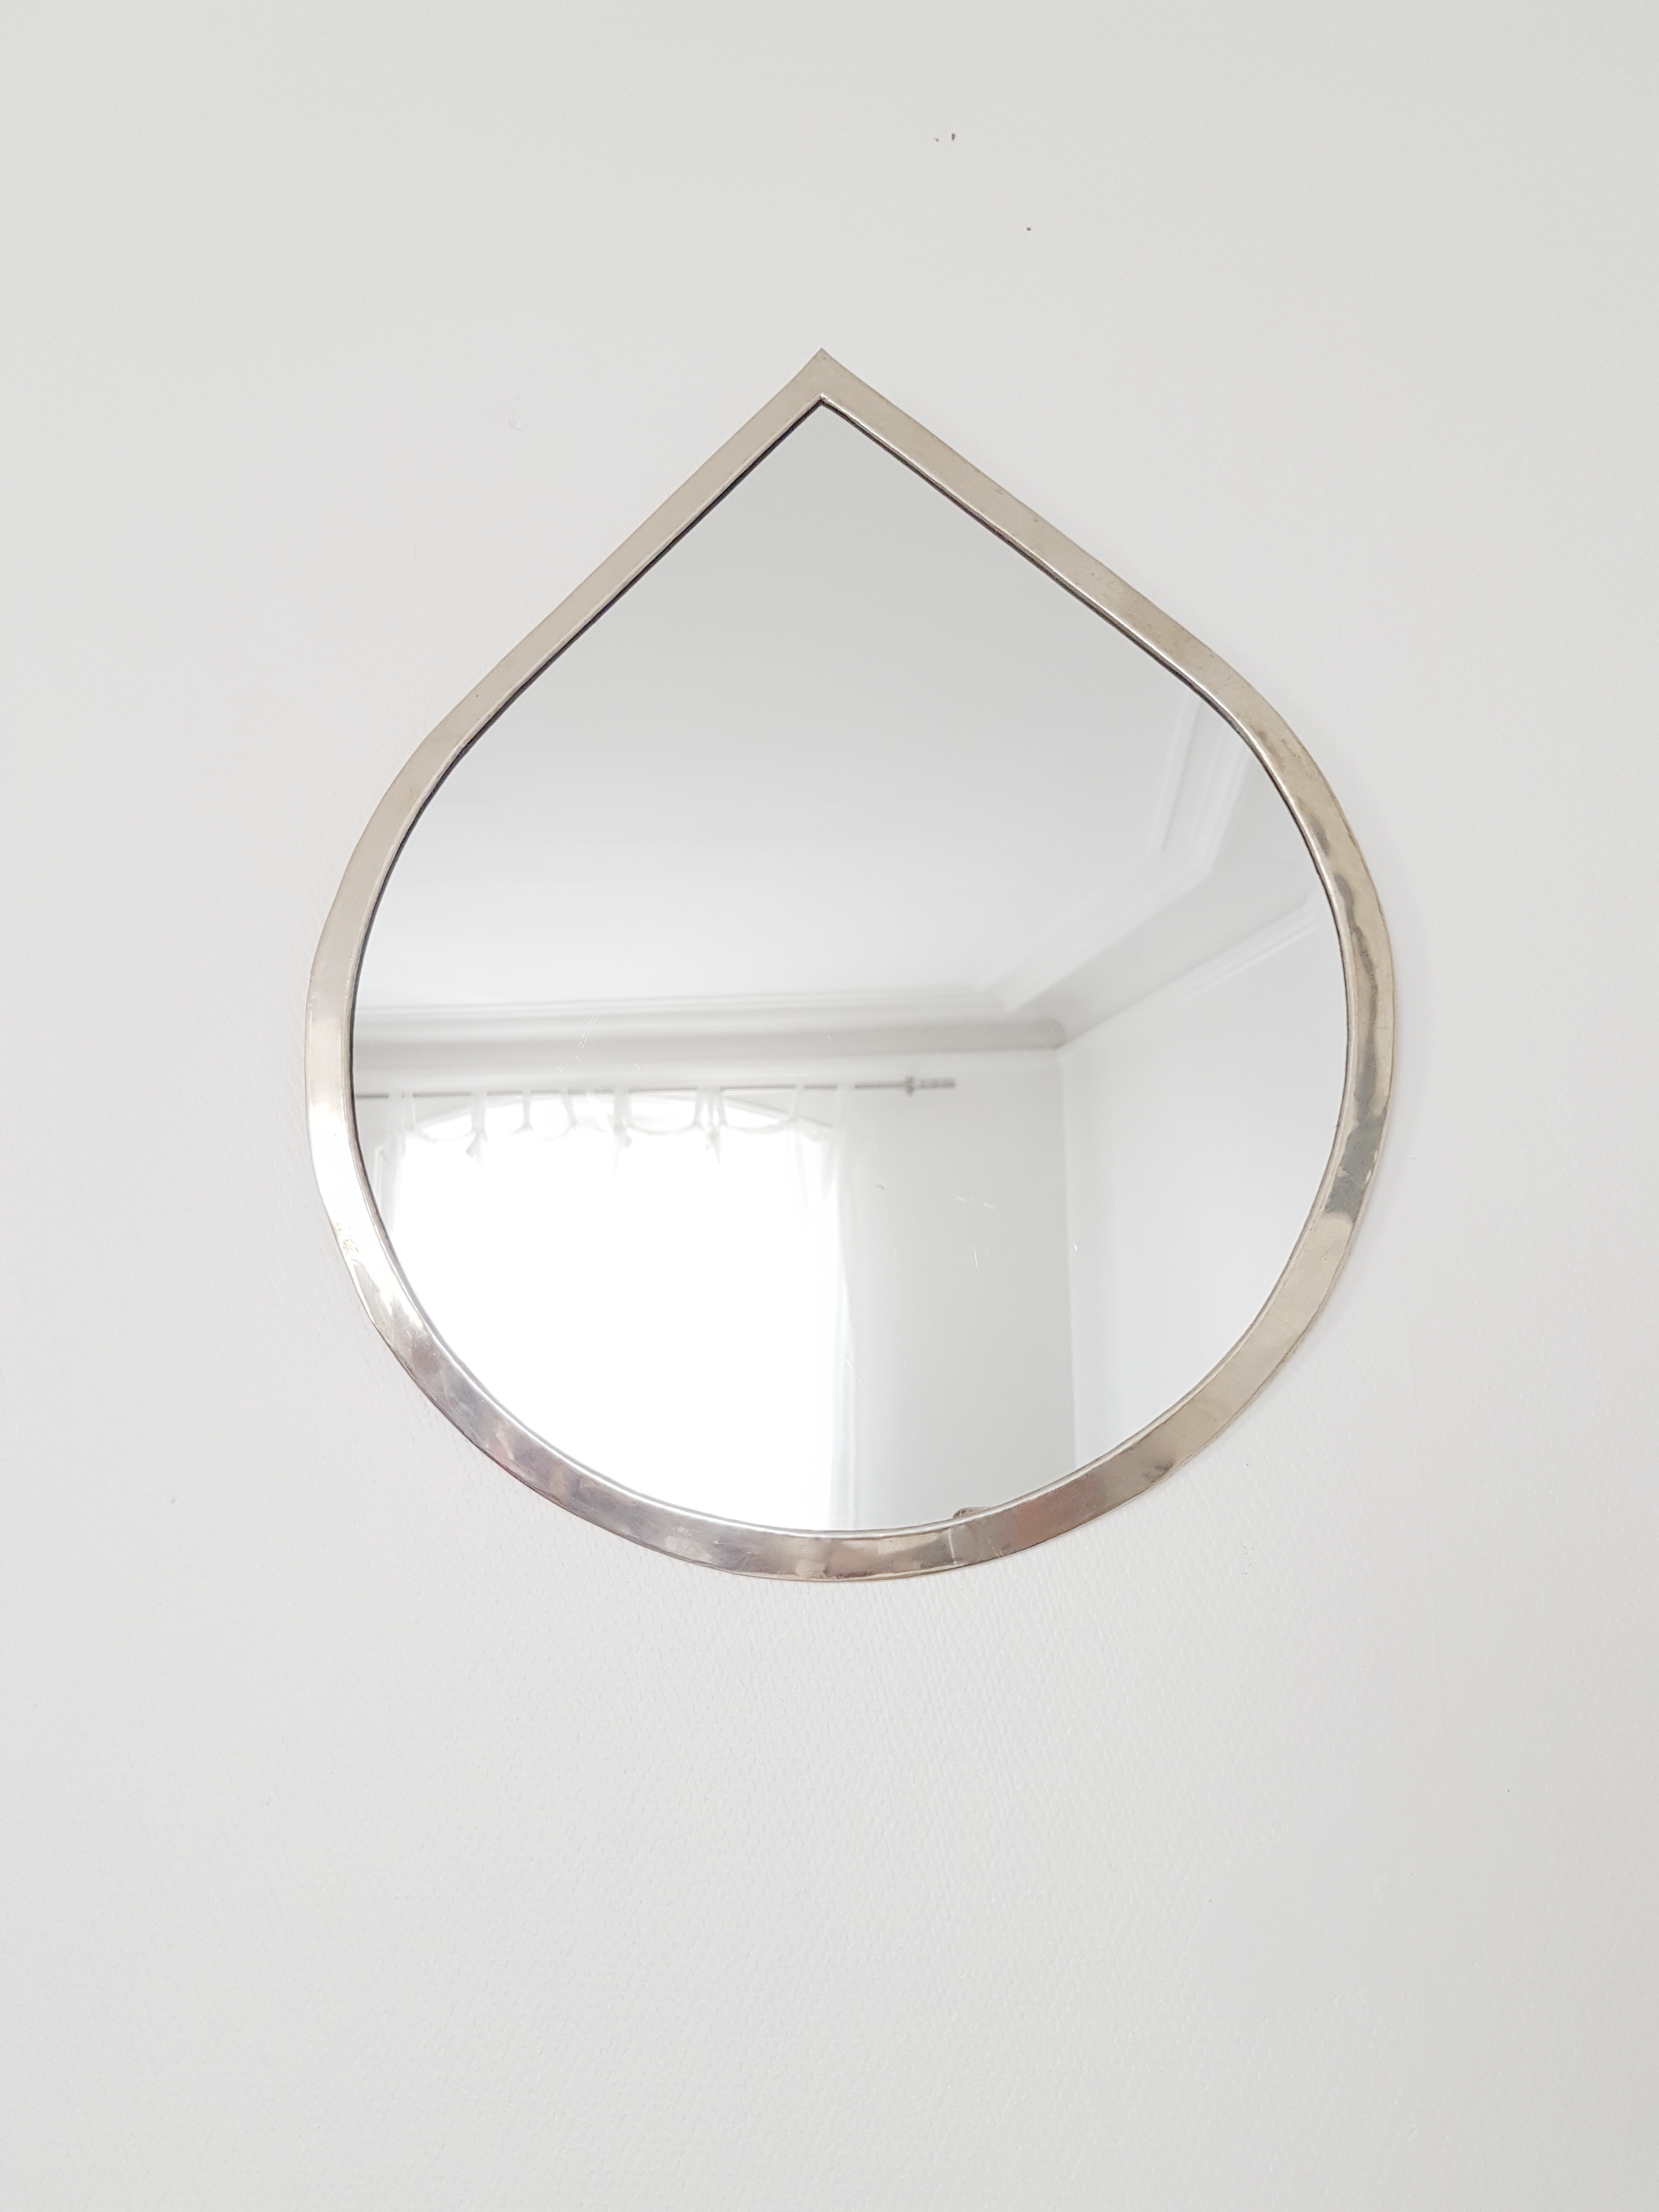 moroccan mirror